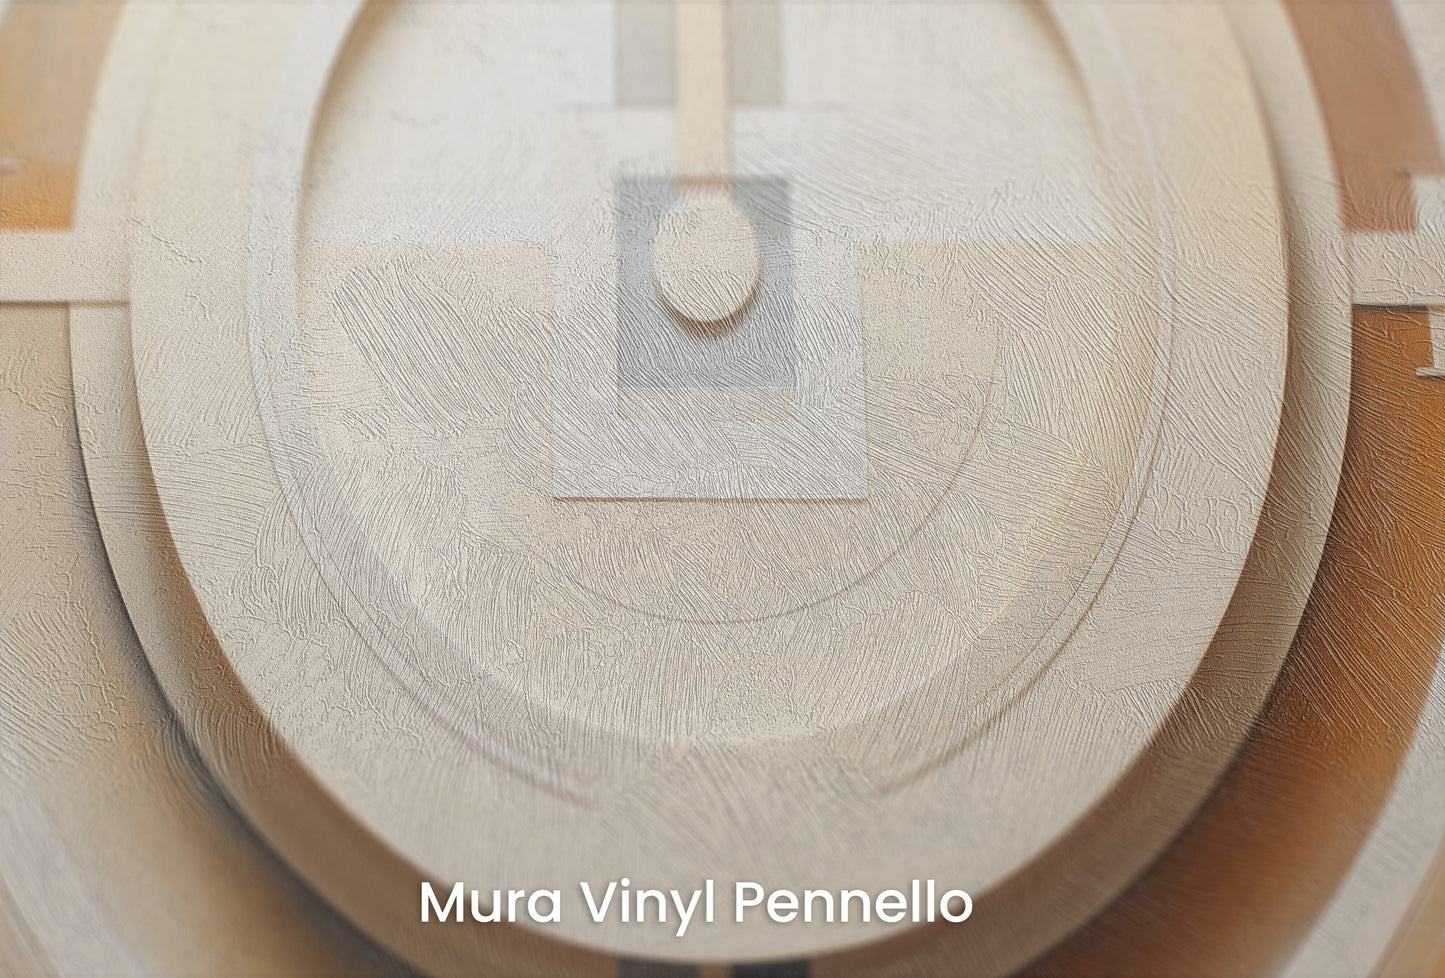 Zbliżenie na artystyczną fototapetę o nazwie CUBIST CONCENTRIC SPLENDOR na podłożu Mura Vinyl Pennello - faktura pociągnięć pędzla malarskiego.